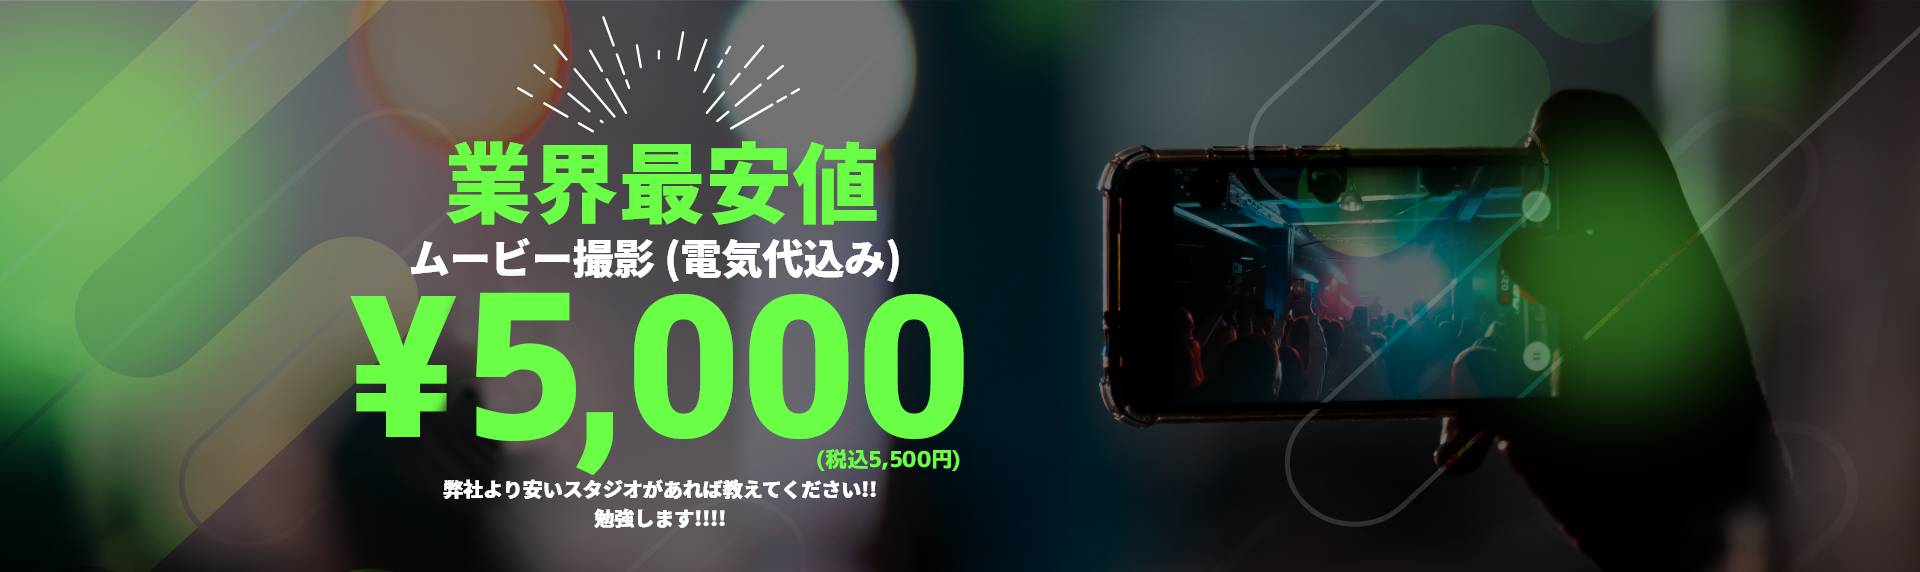 業界最安値ムービー撮影 (電気代込み)¥3,000